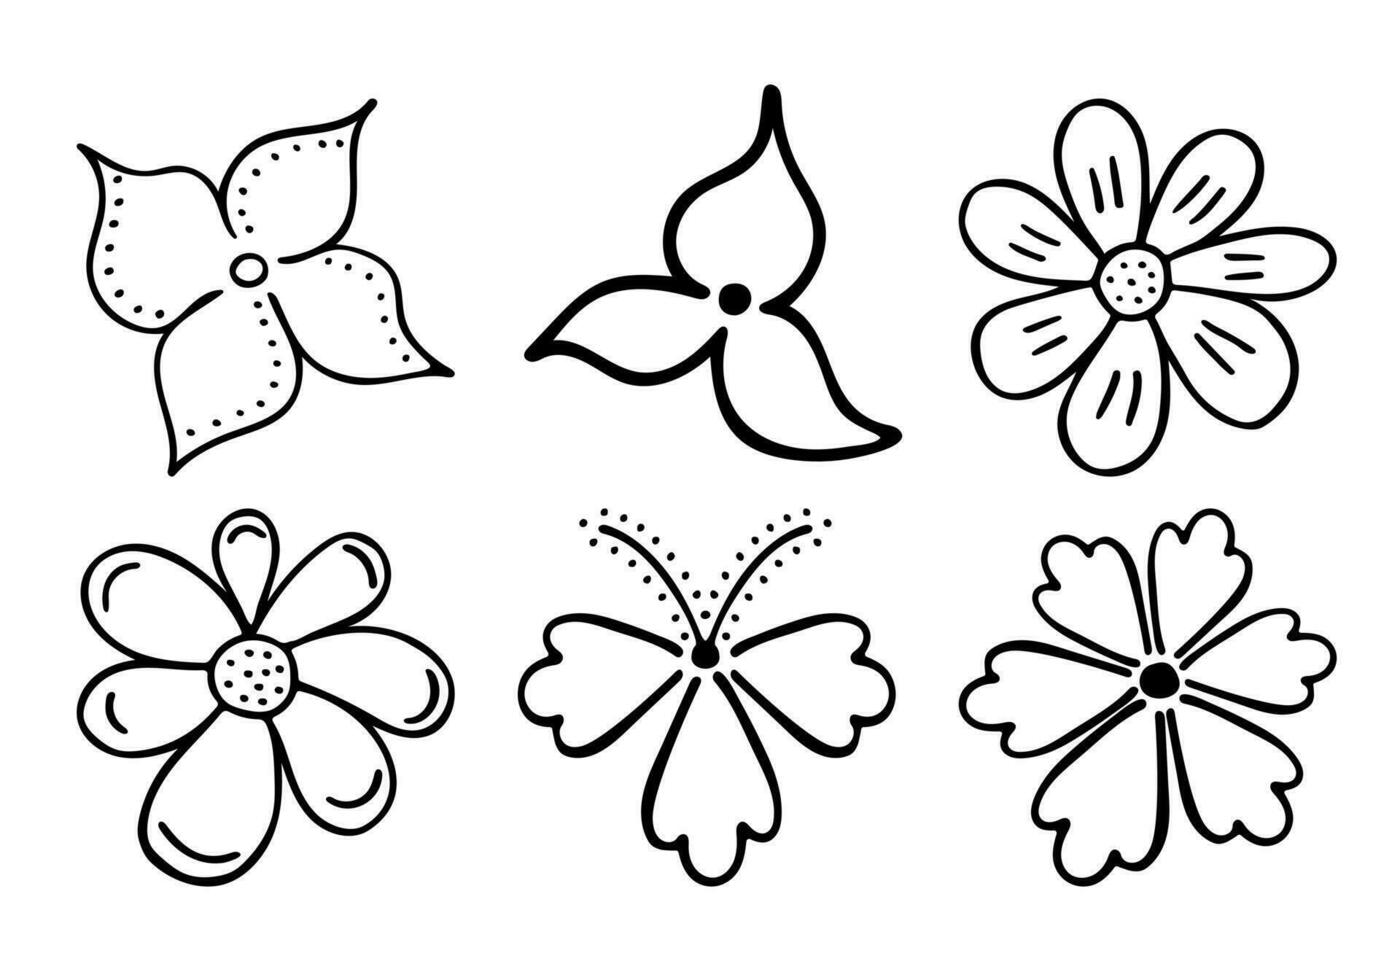 bosquejo garabato contorno flores. dibujo a mano de brotes de plantas durante la floración. siluetas de pétalos. vector aislado.